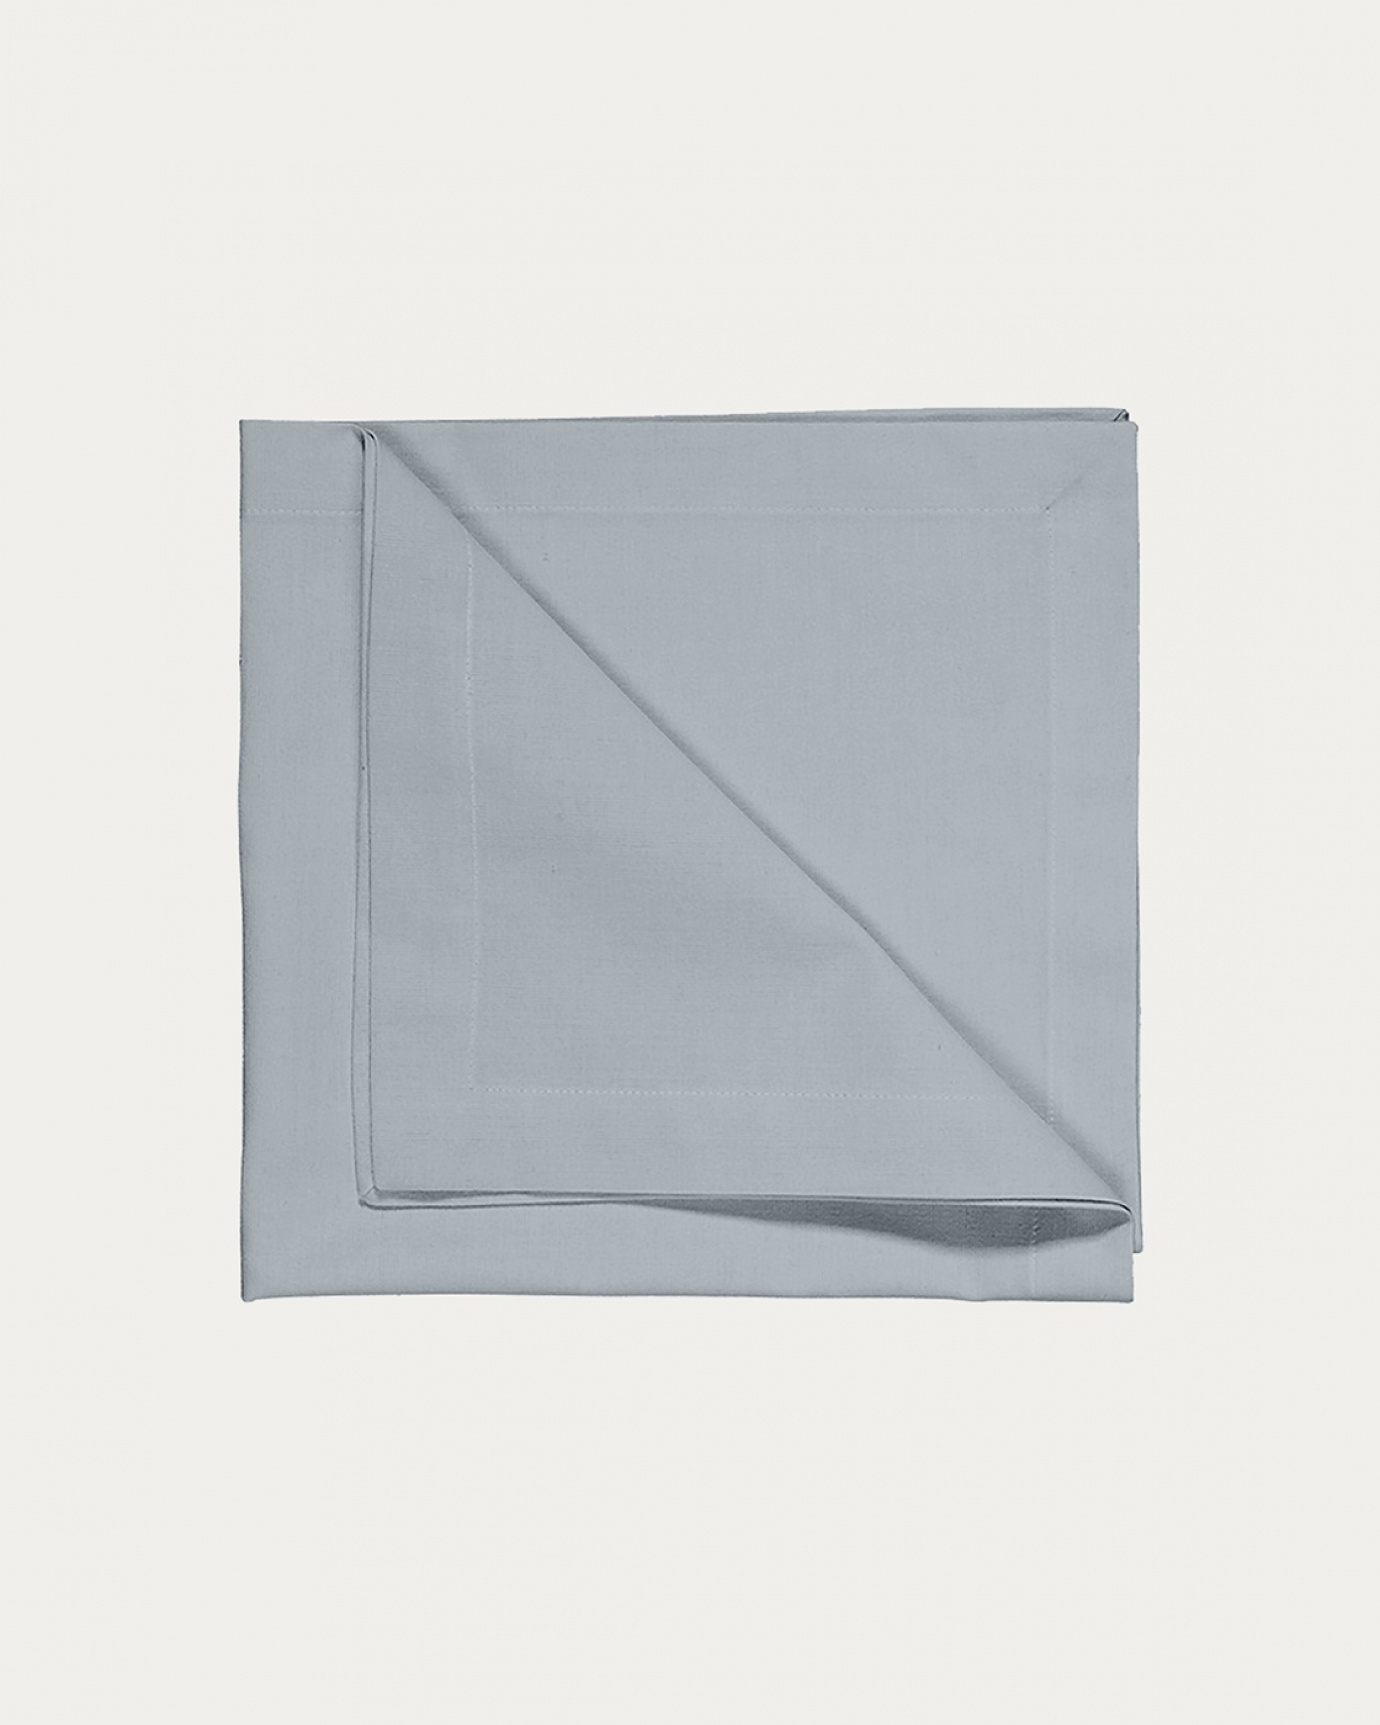 Immagine prodotto blu grigio scuro ROBERT tovagliolo in morbido cotone di LINUM DESIGN. Dimensioni 45x45 cm e venduto in 4-pezzi.